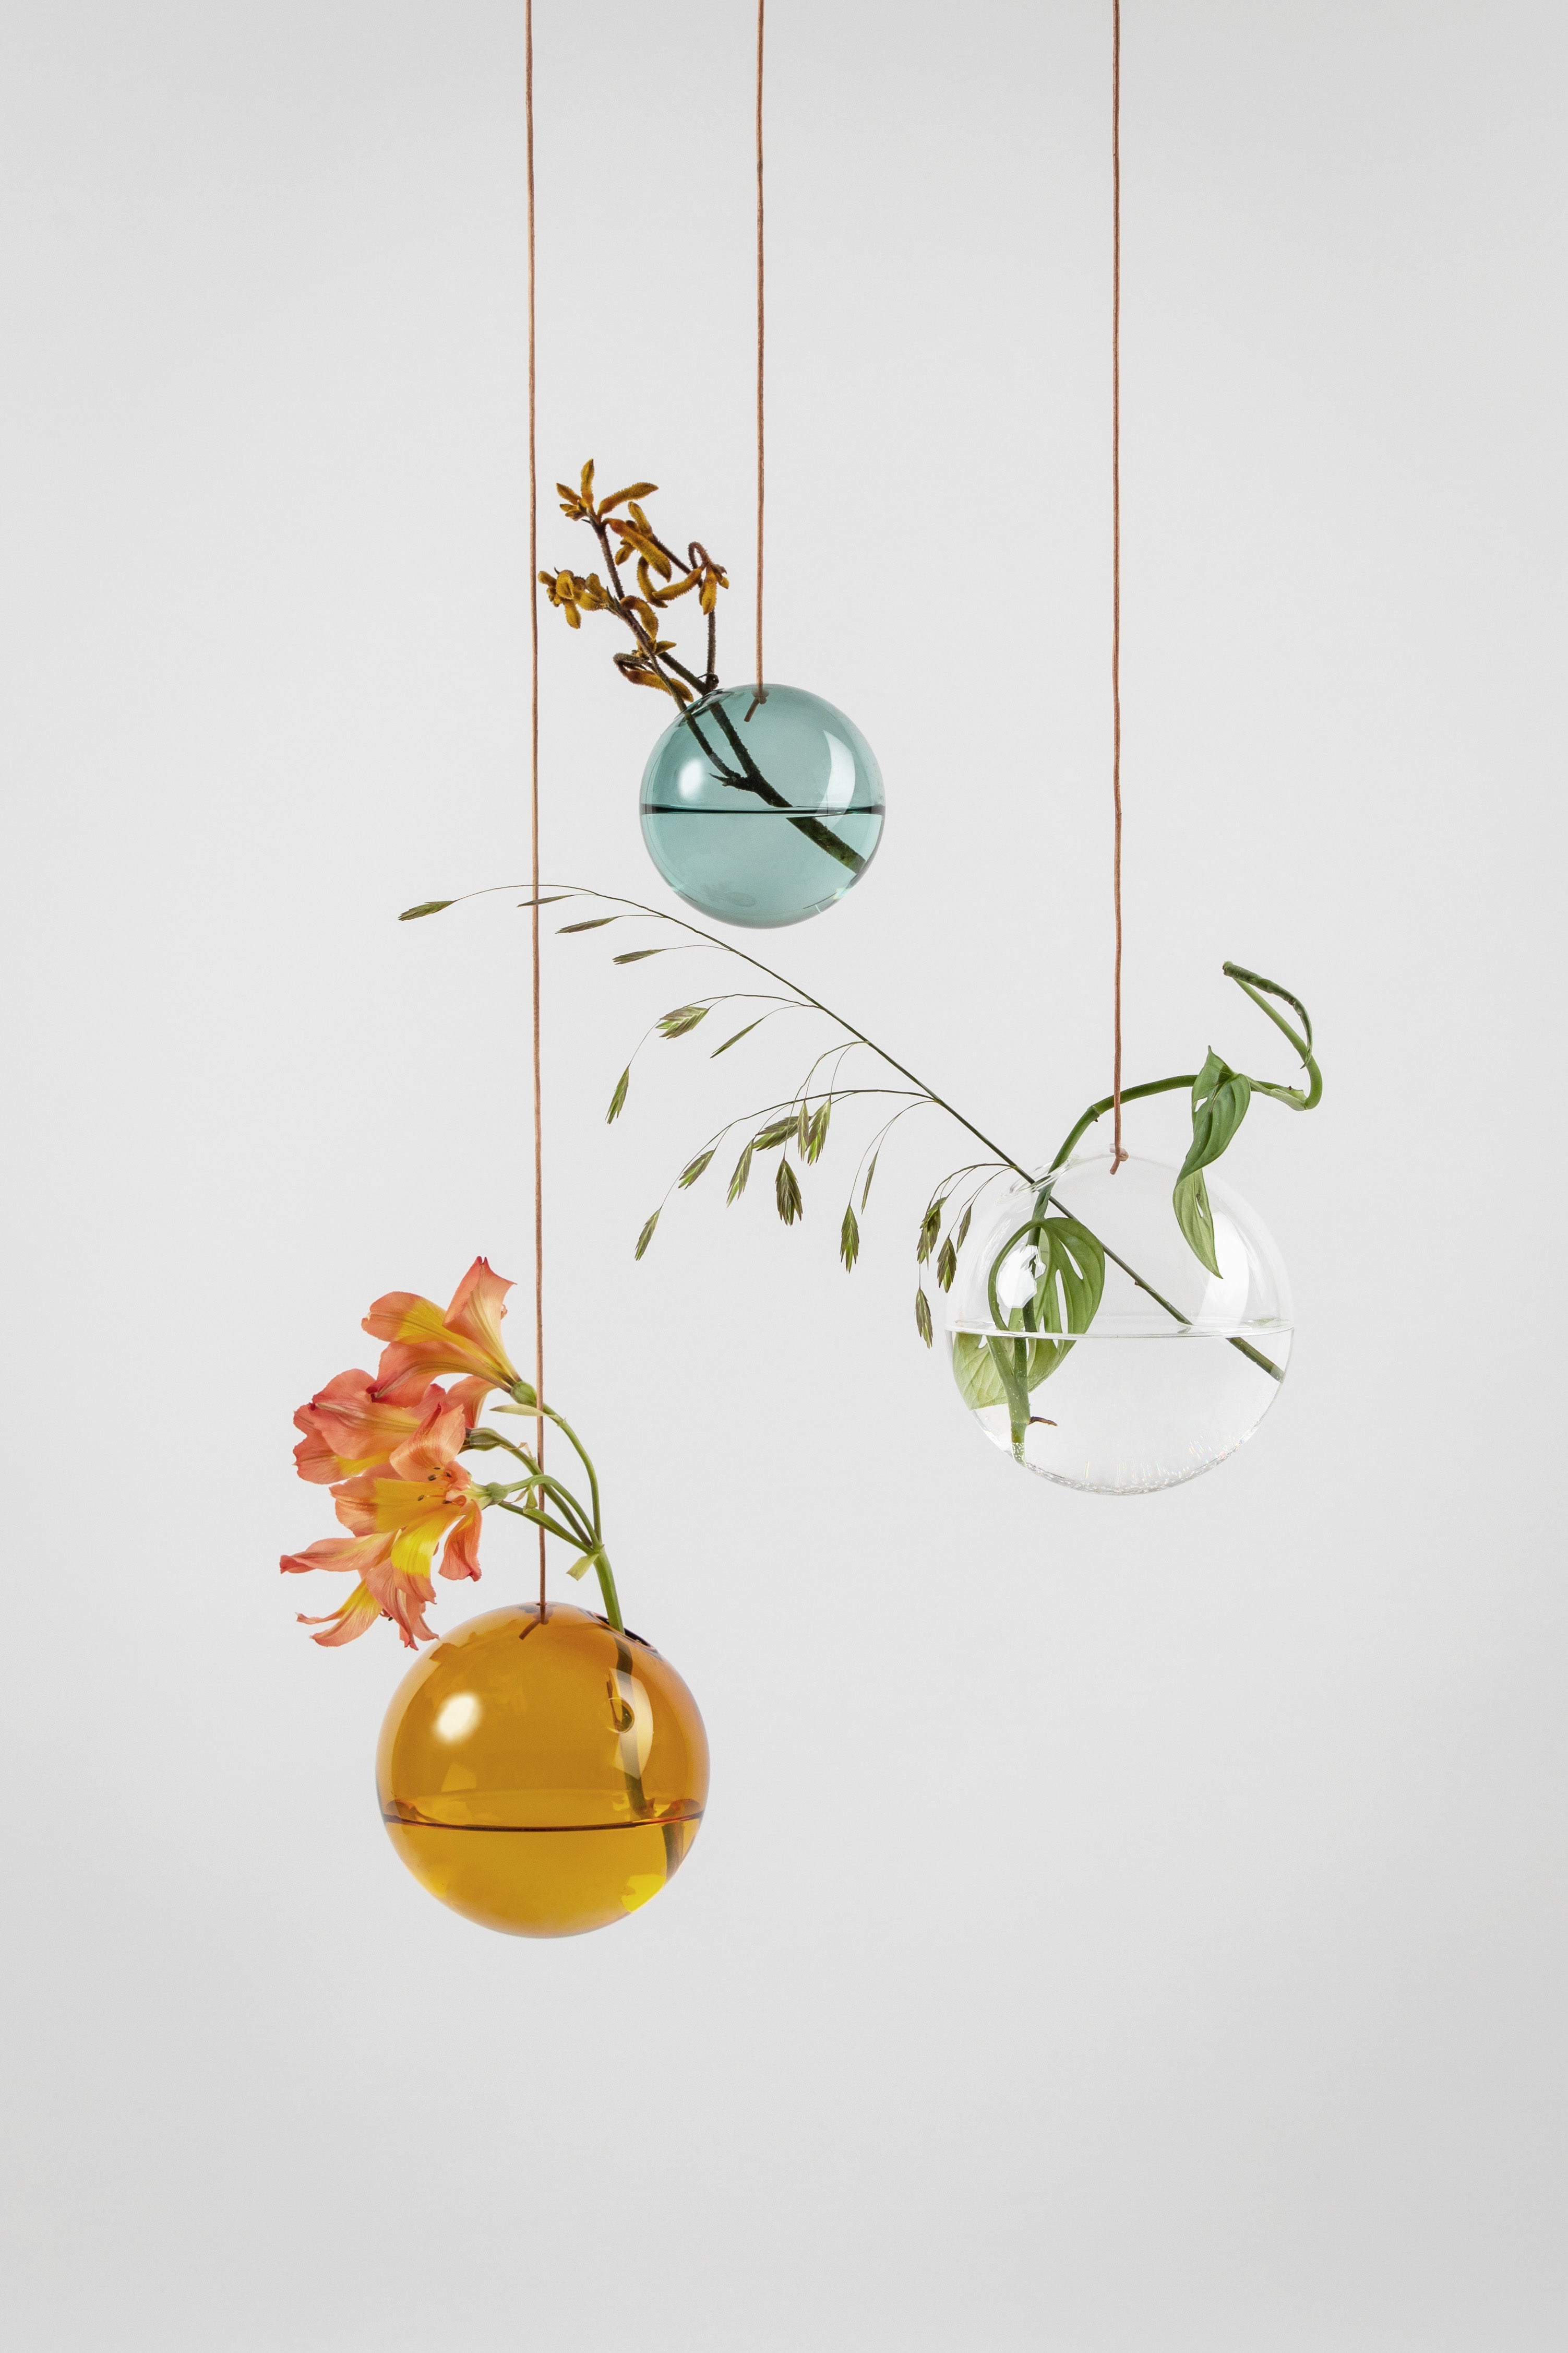 Studio über hängende Blumenblasenvase klein, Cyan